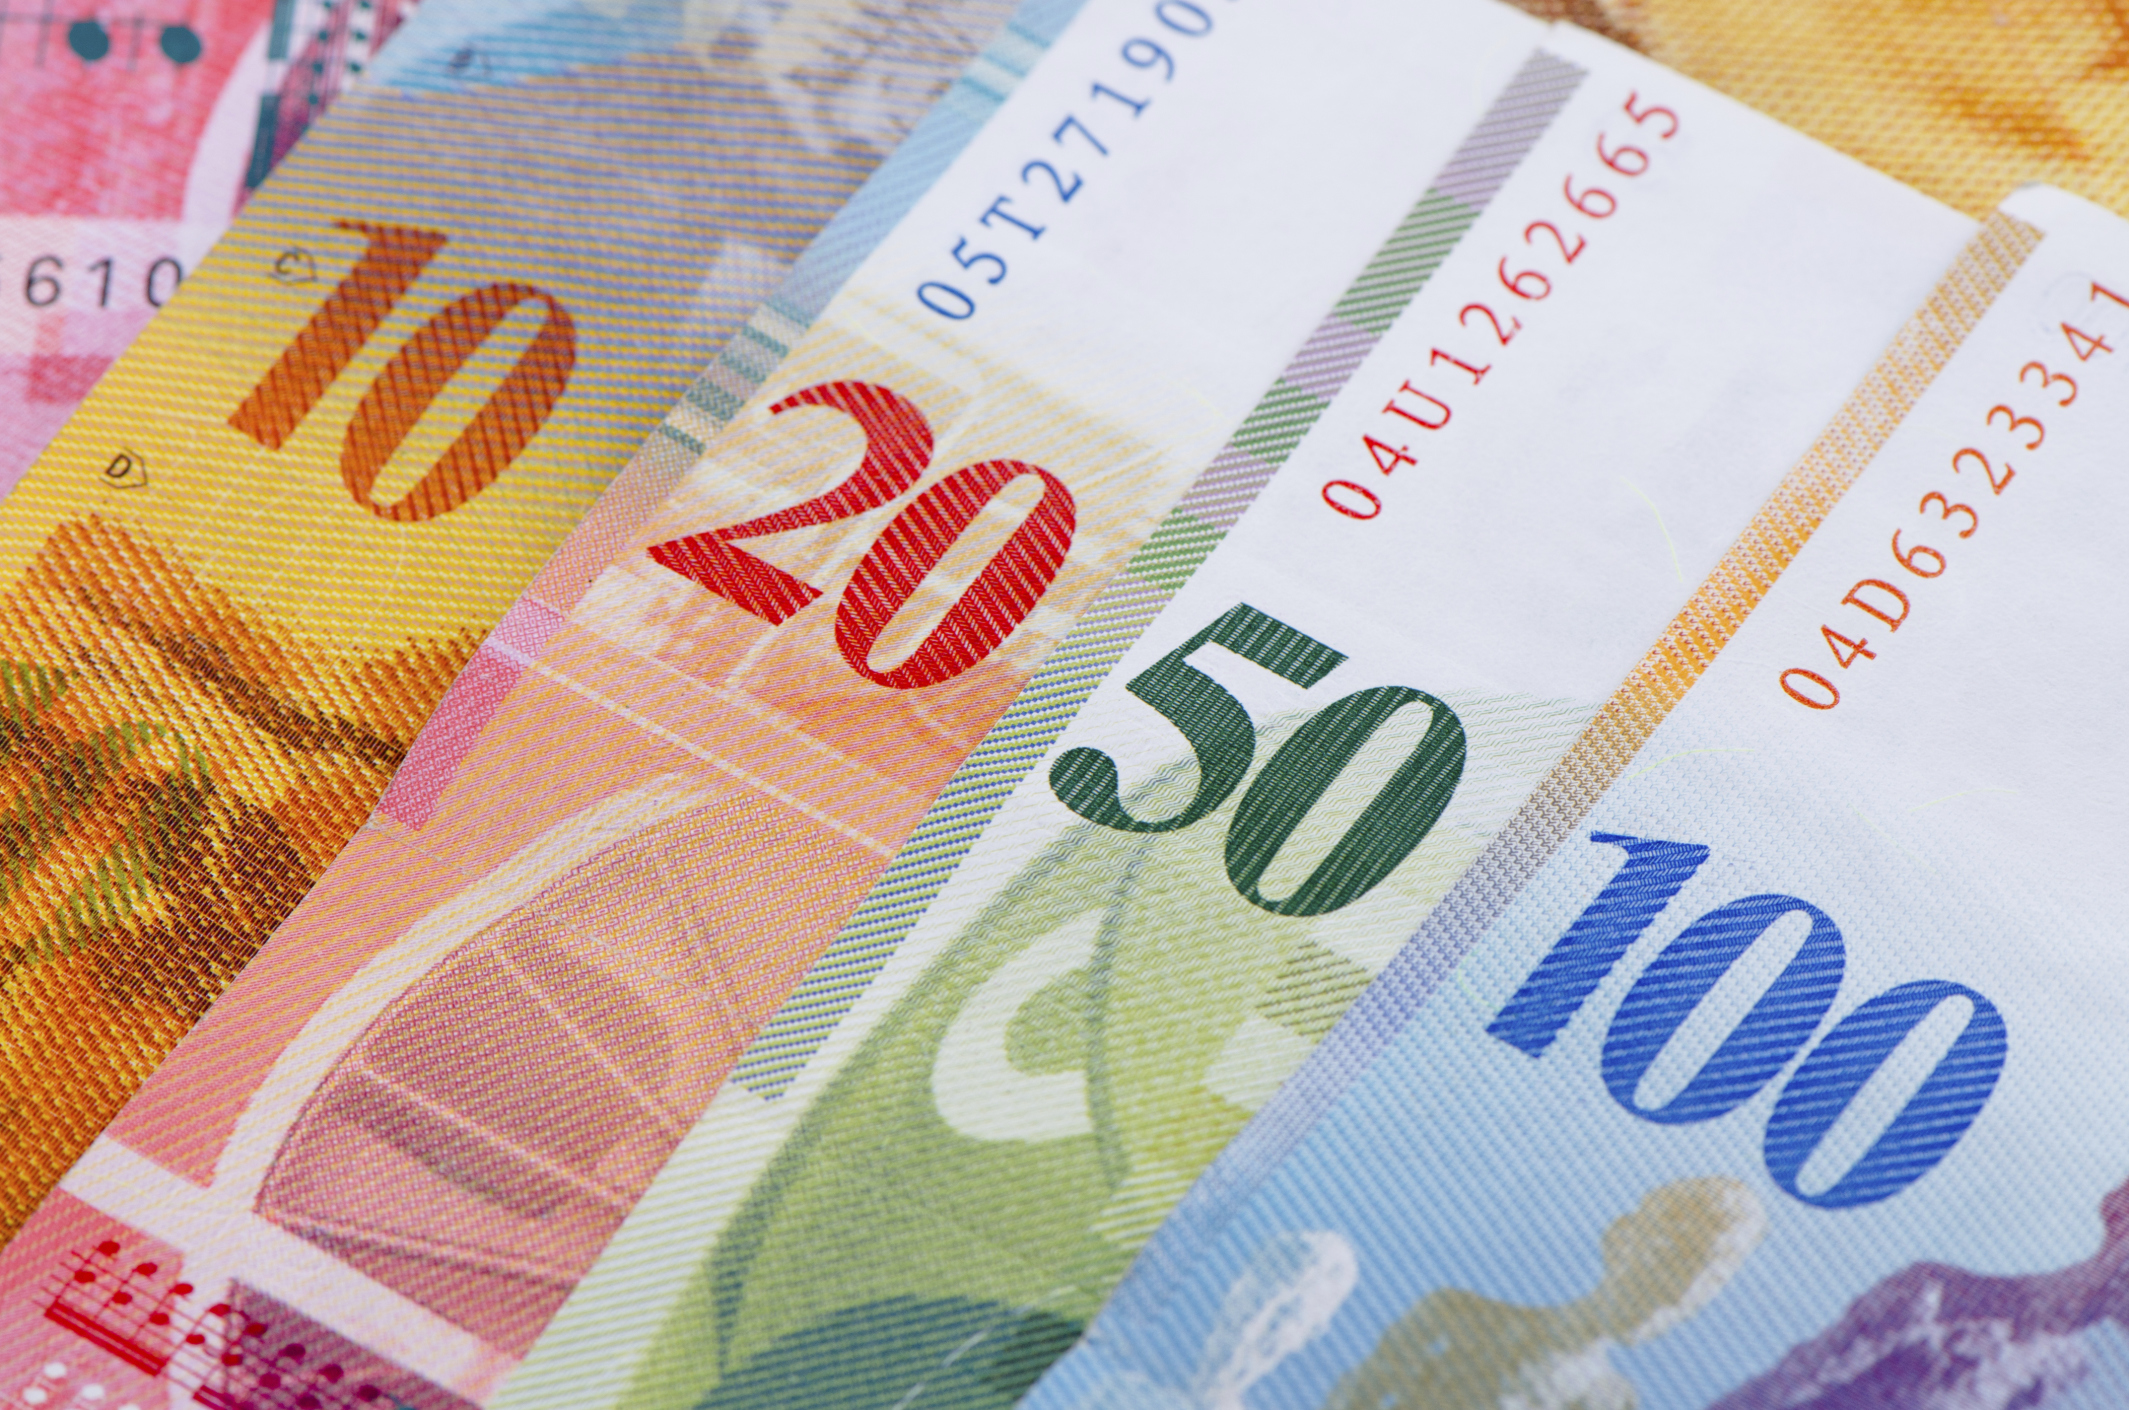 Швейцарские франки в рубли. Швейцарский Франк валюта. Швейцария валюта франки. Деньги Швейцарии купюры. Швейцарский Франк изображение.